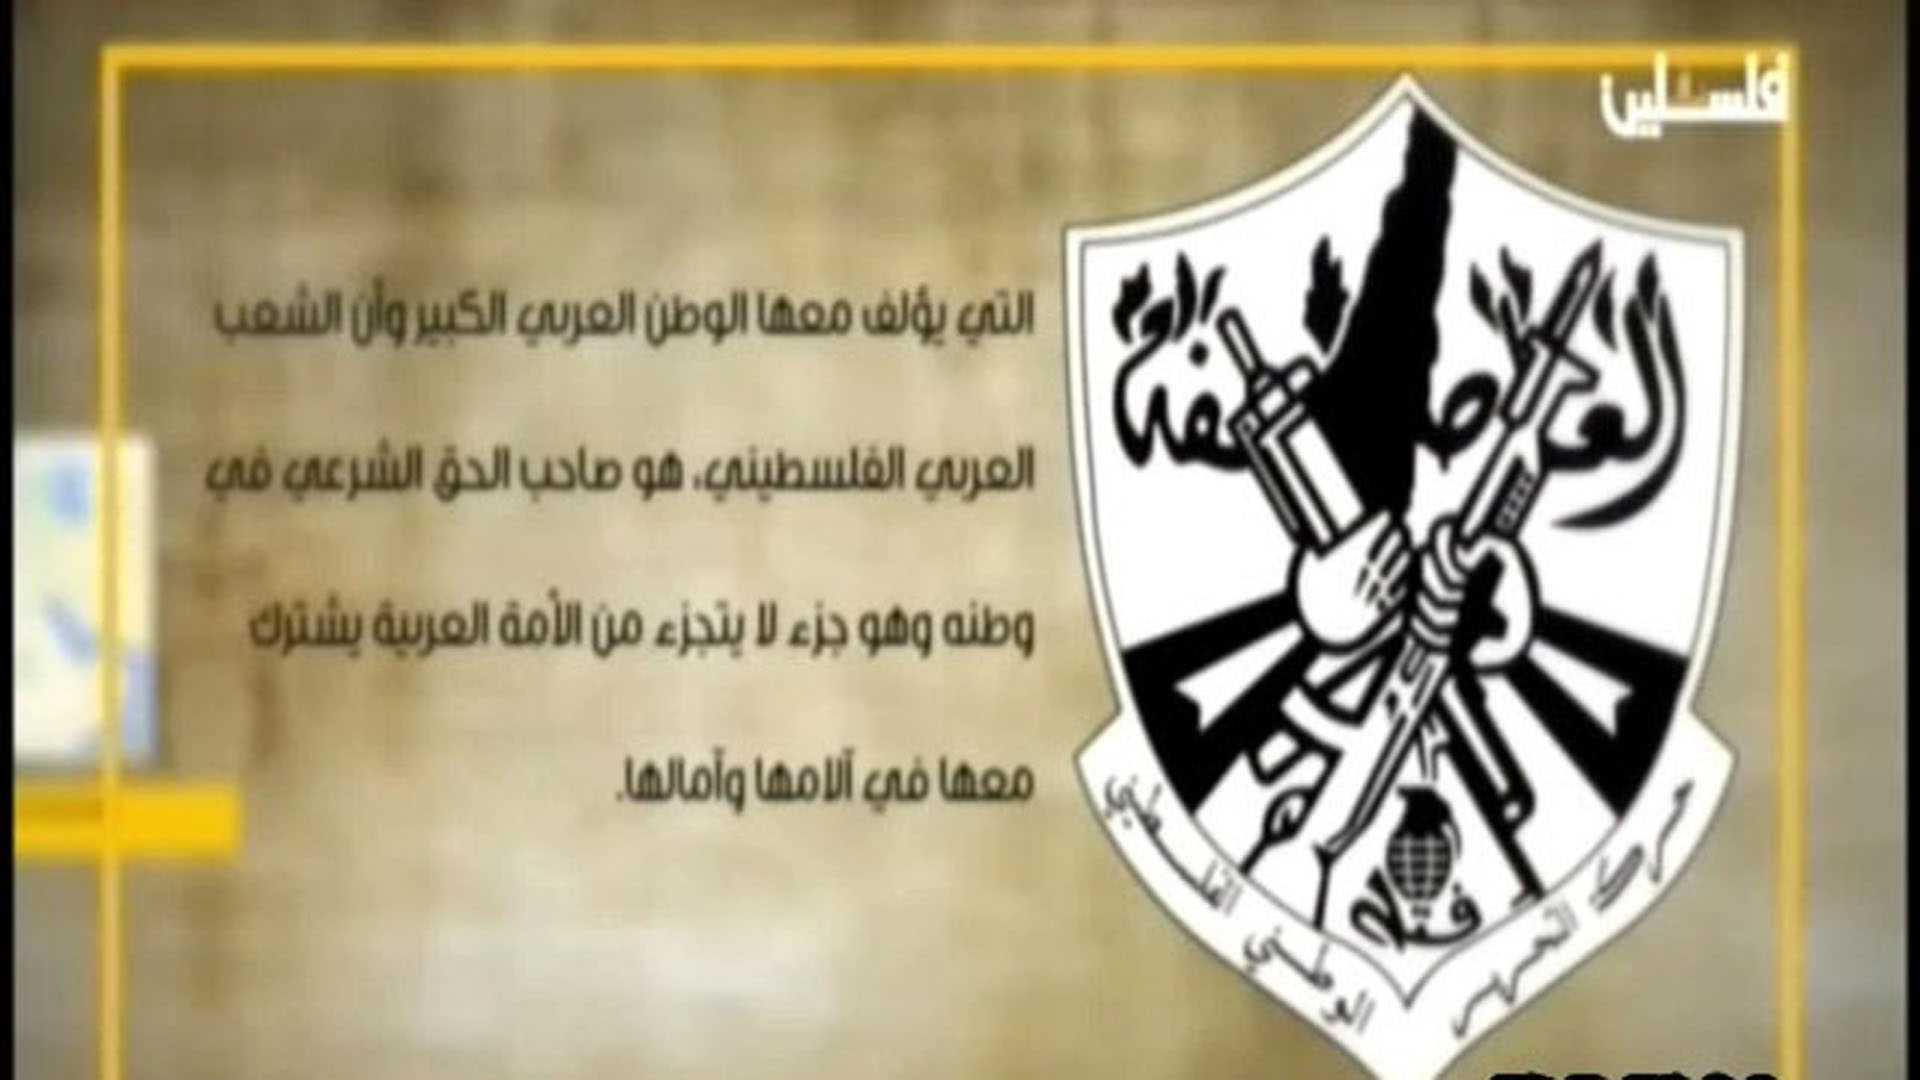 Das alte Fatah-Logo neben dem arabischen Text